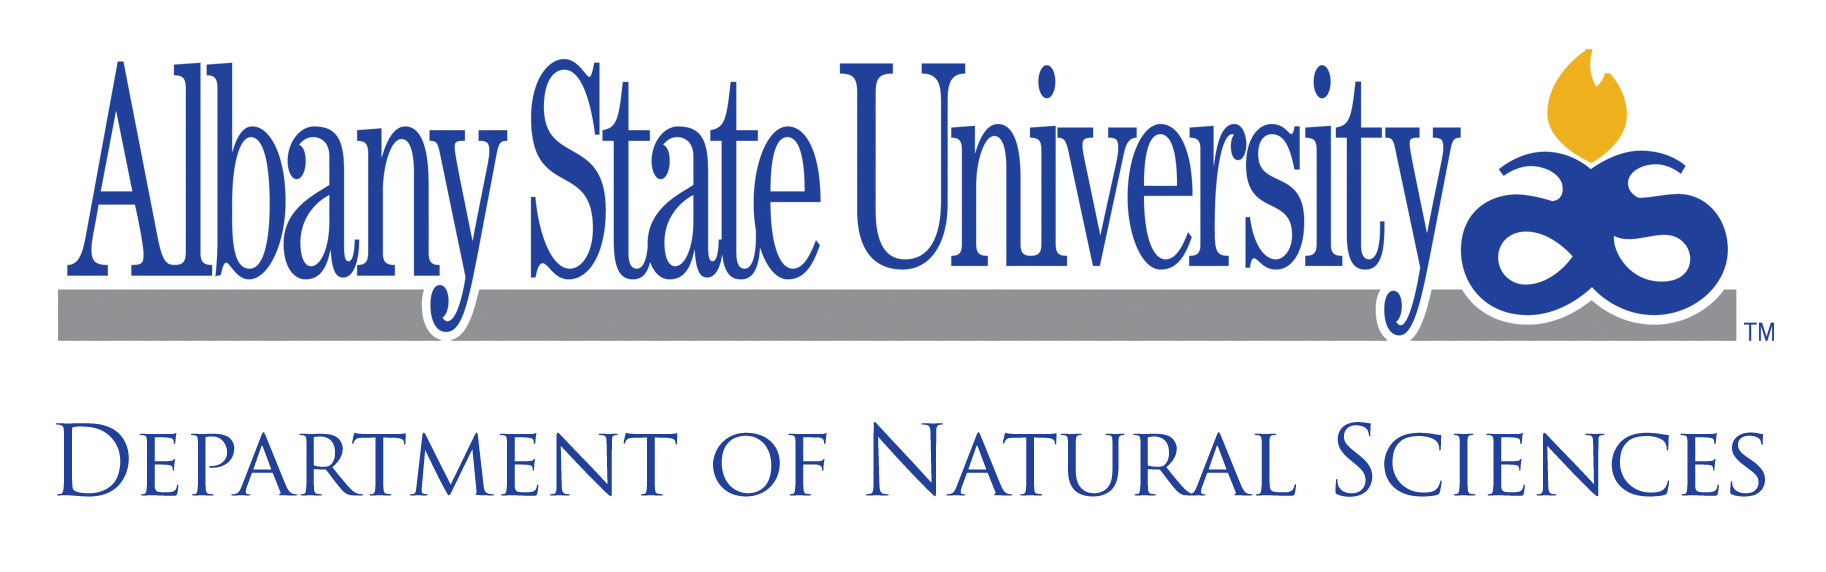 natural science logo